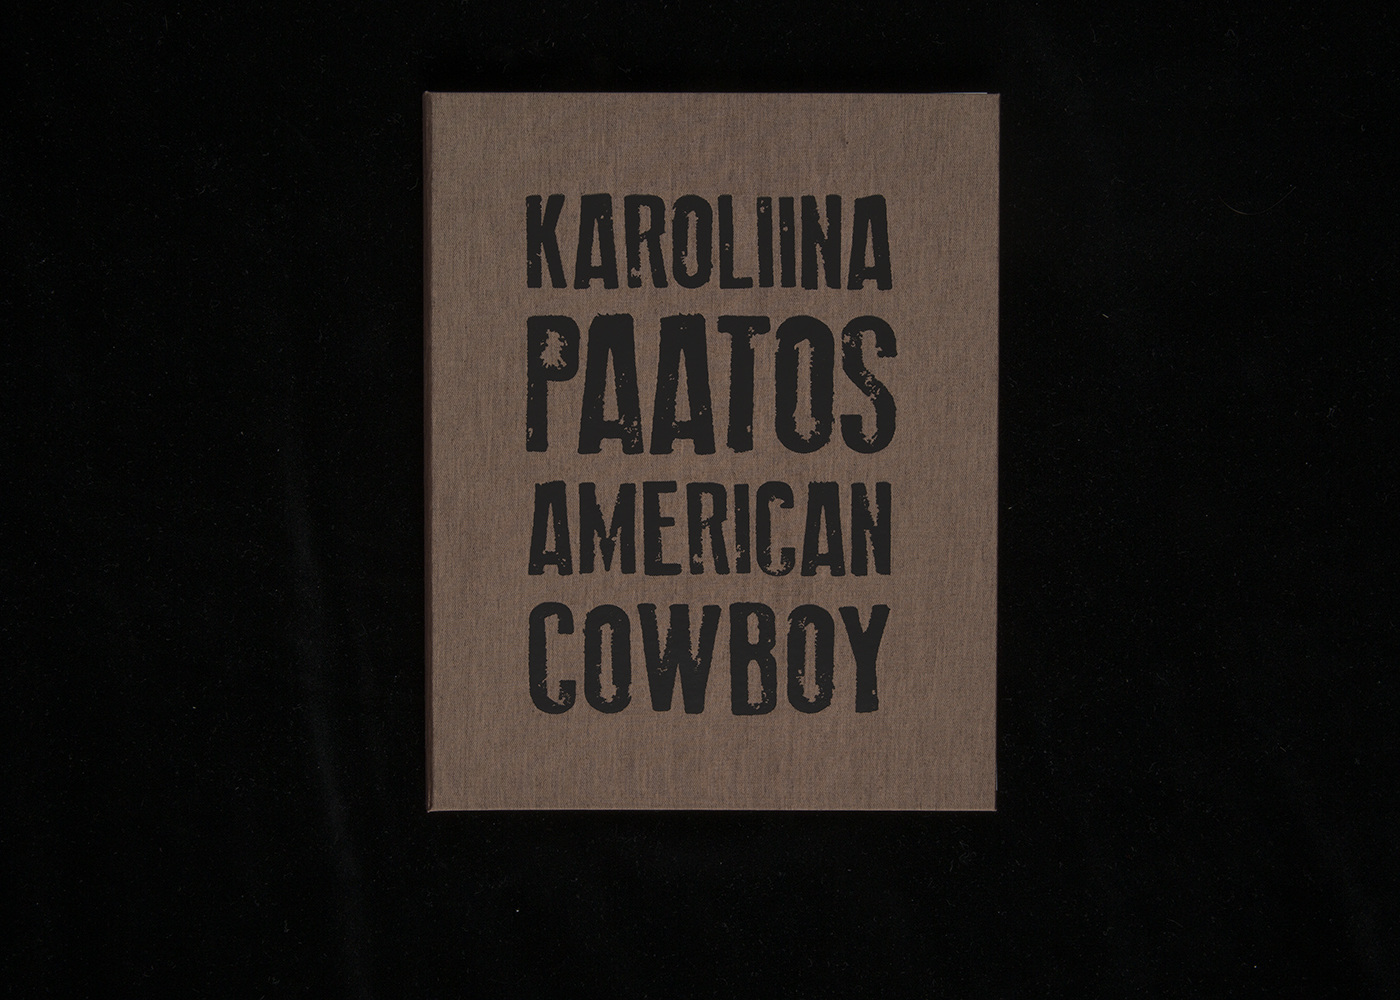 Karoliina Paatos: American Cowboy